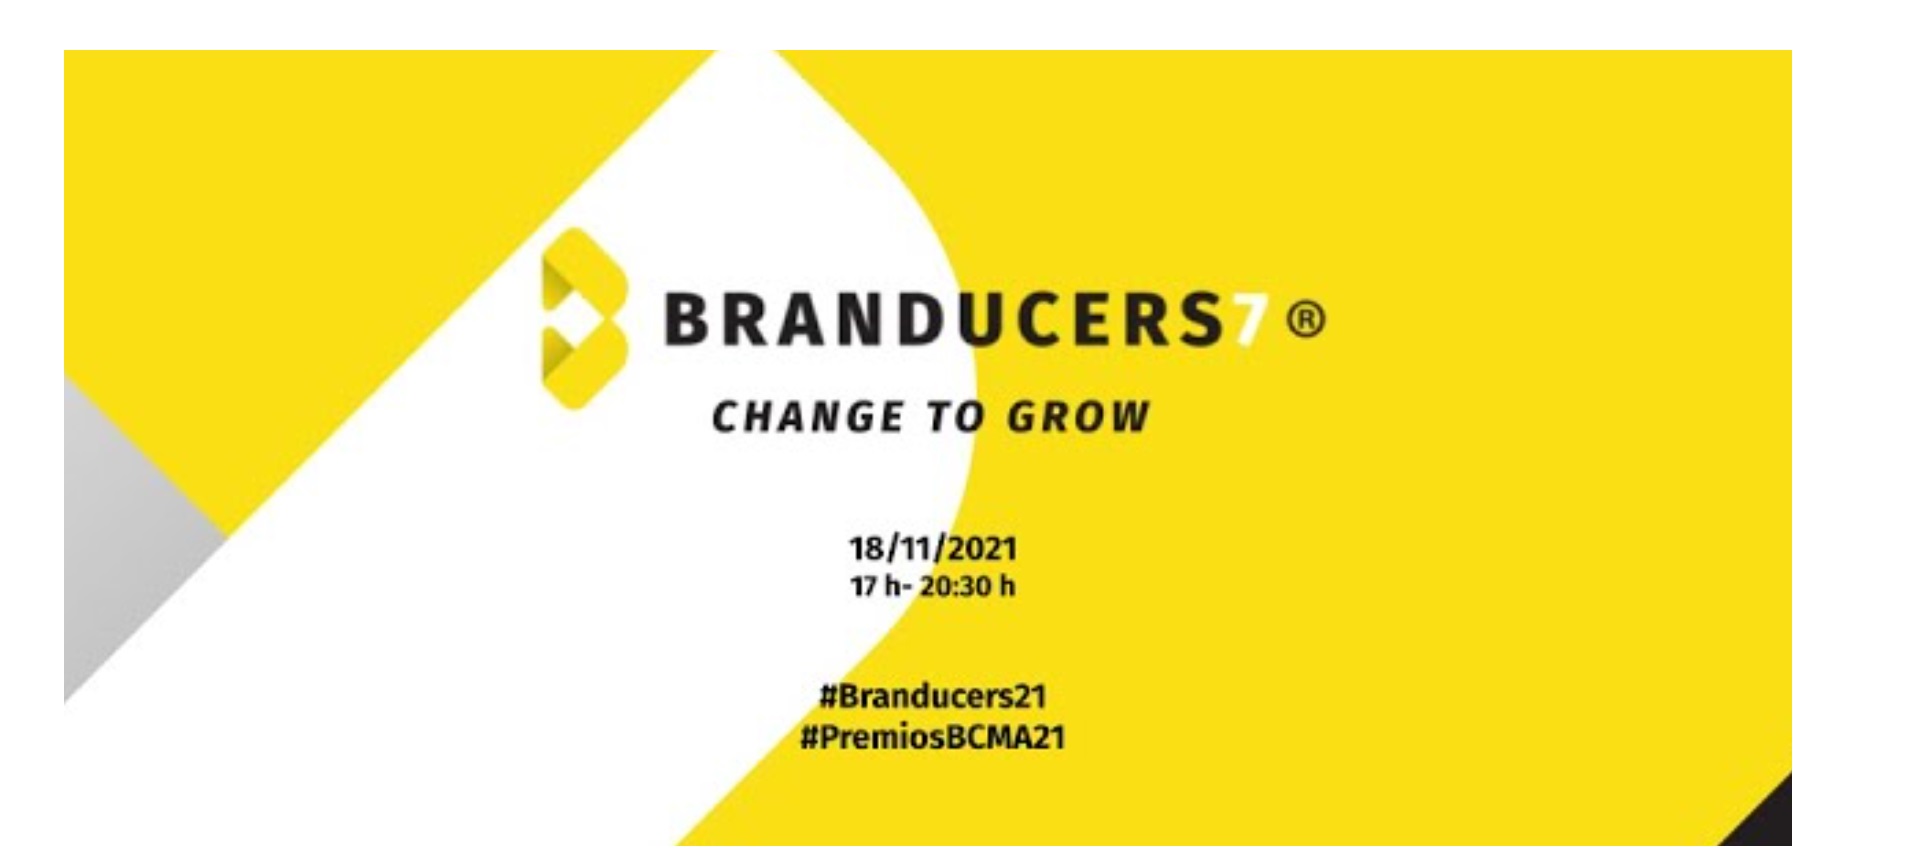 VII edición, Branducers21, jueves, , Sequoya, Change to grow,programapublicidad